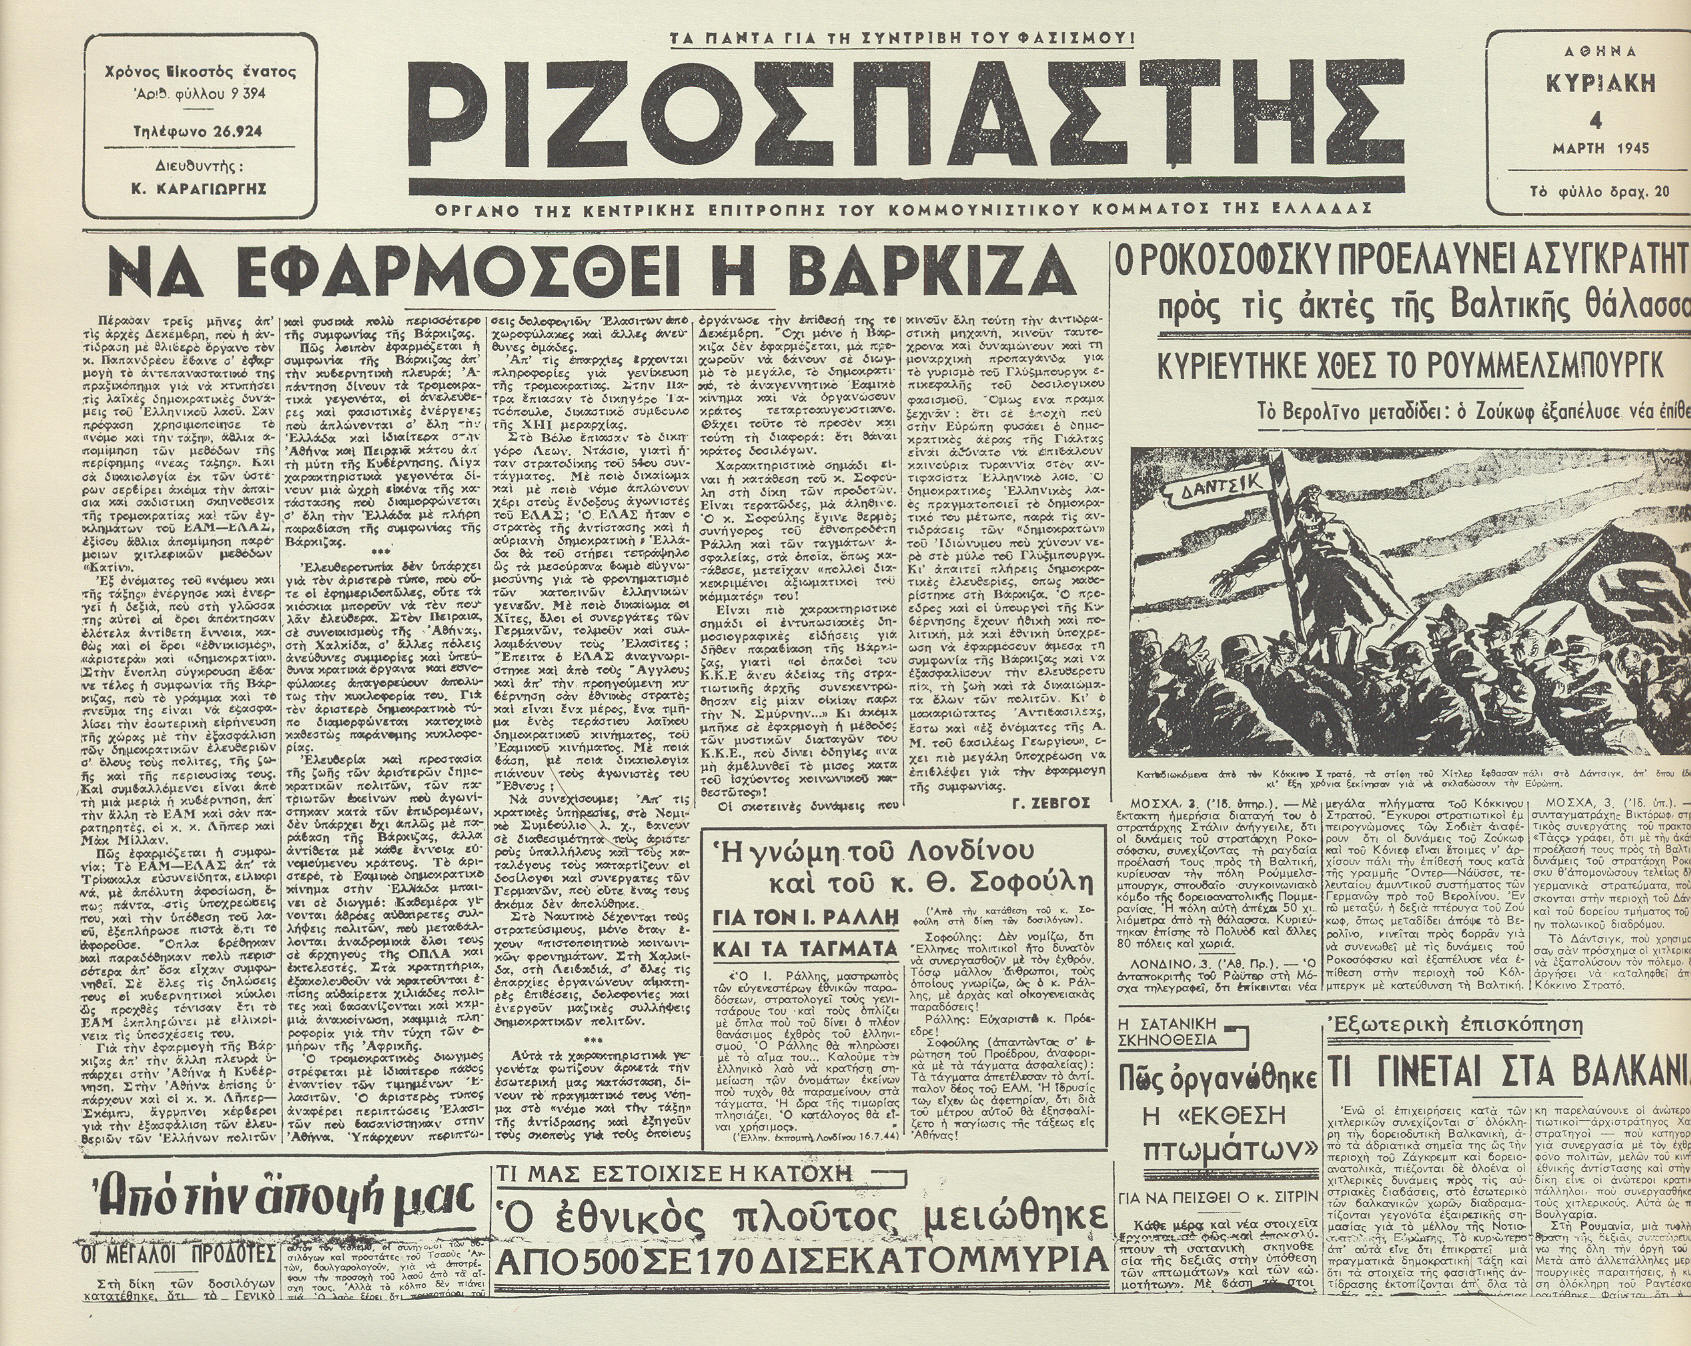 Εξώφυλλο του Ριζοσπάστη της 4/3/1945, όπου εκφράζεται η ανάγκη να εφαρμοσθεί η Συνθήκη της Βάρκιζας.